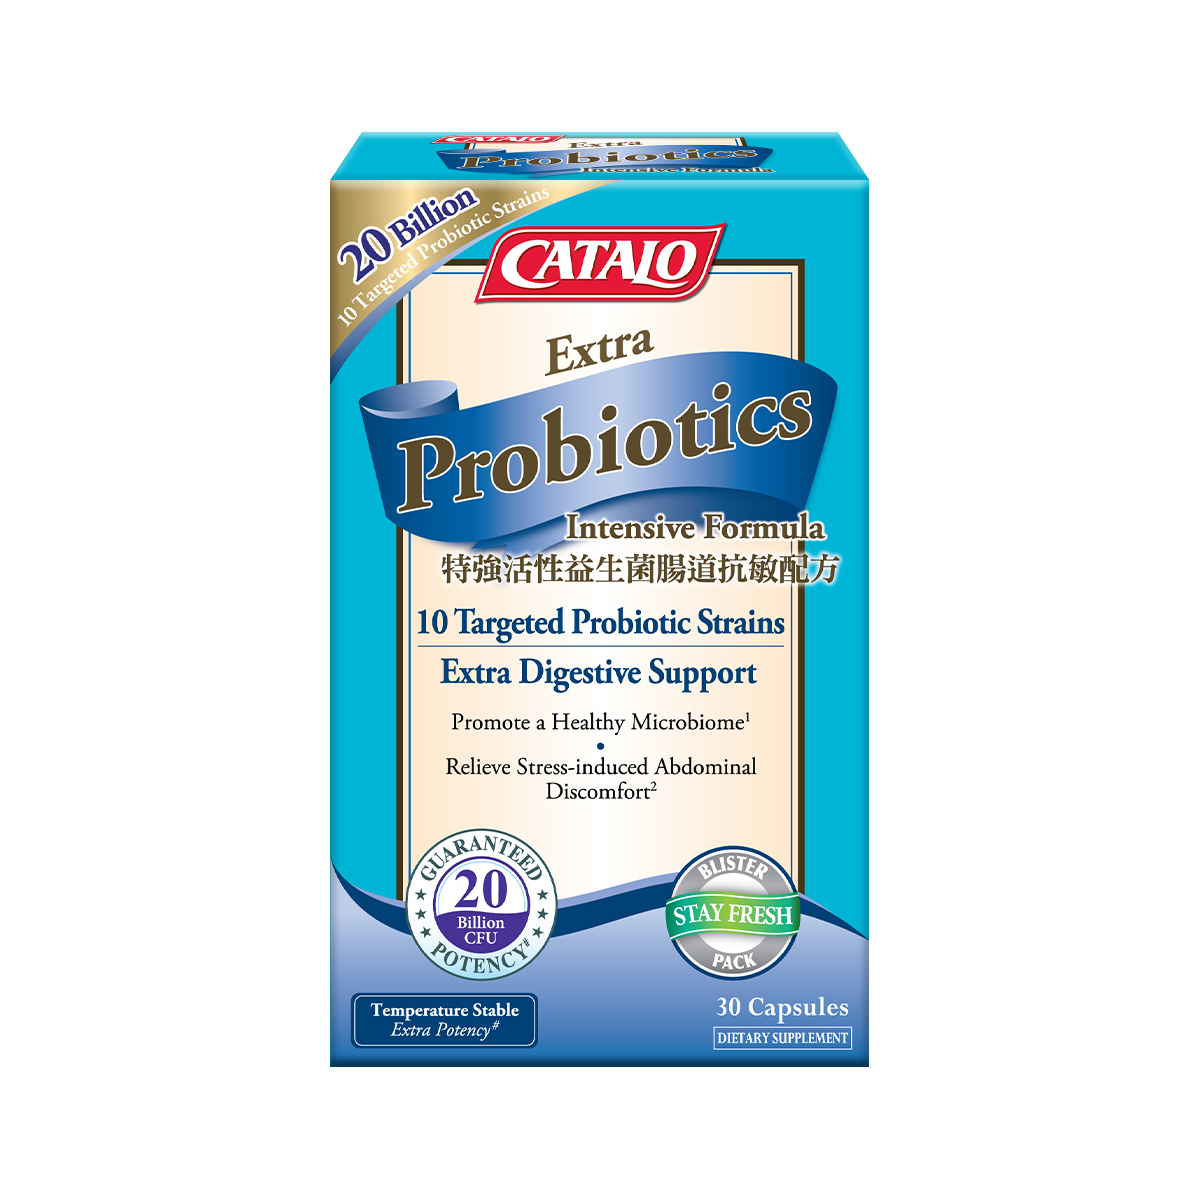 Extra Probiotics Intensive Formula 30 Capsules